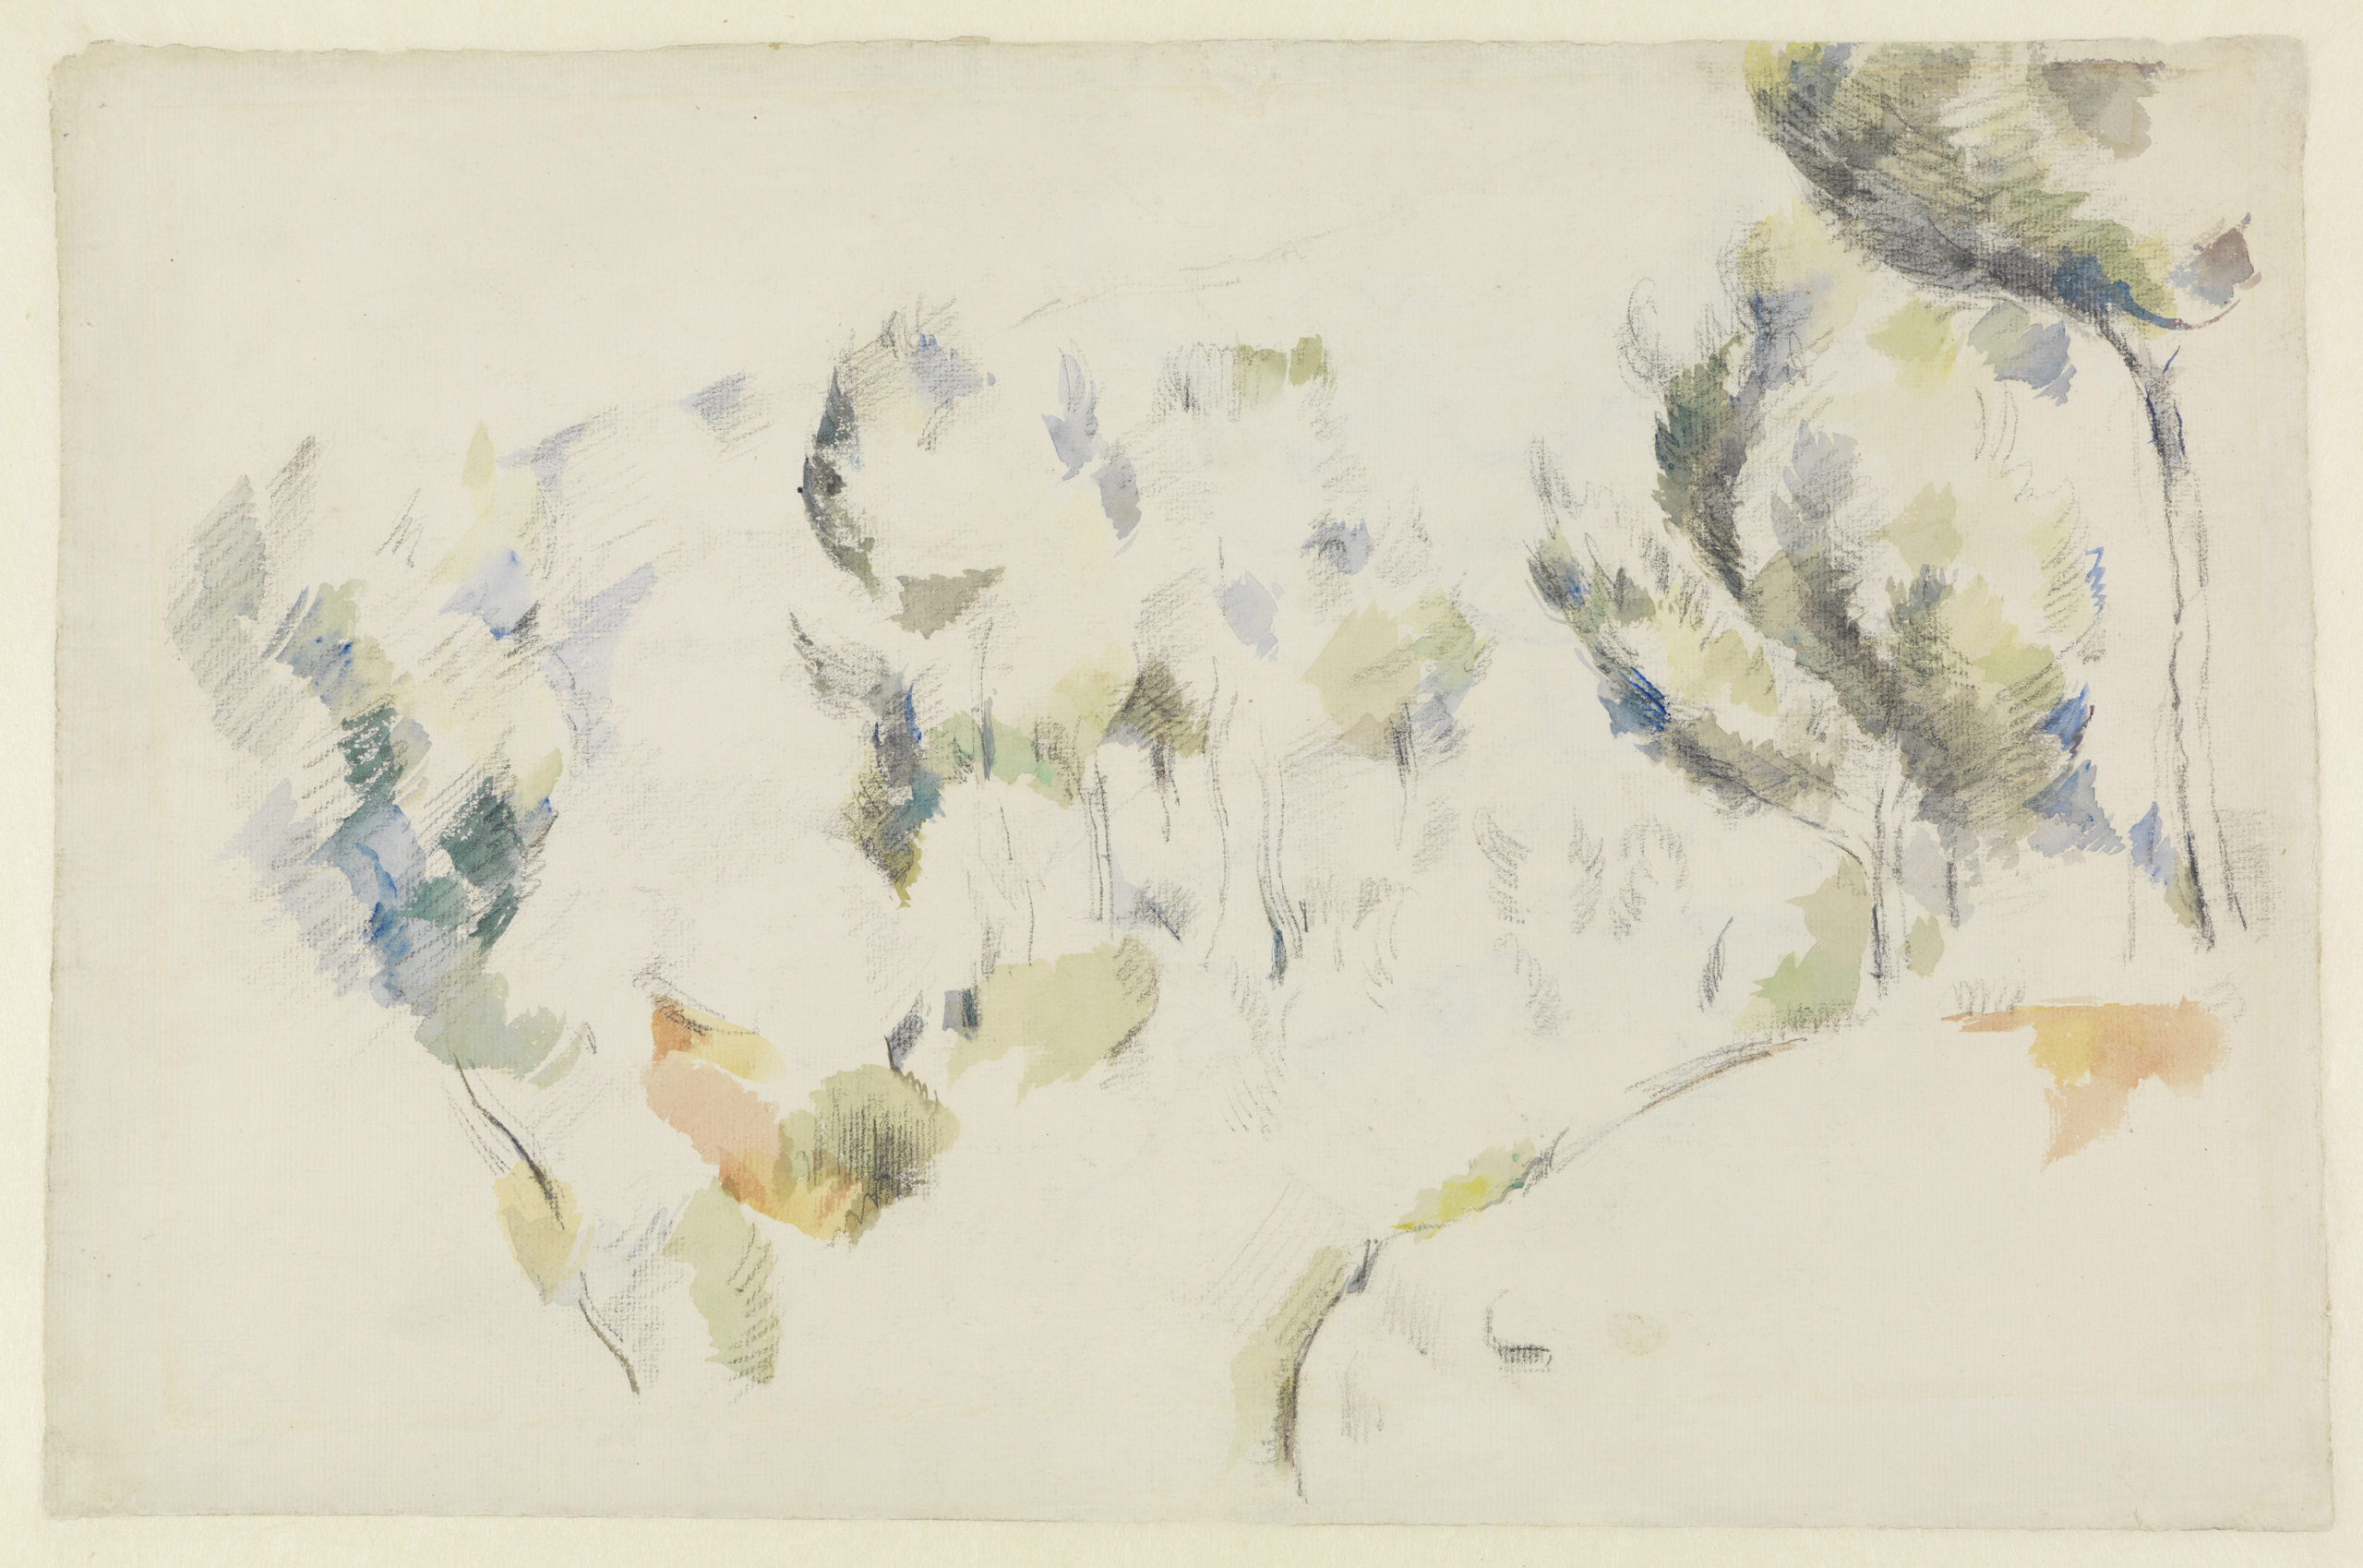 Aquarell von Paul Cézanne. Locker gezeichnete Bäume mit dynamisch wirkenden Aquarelltupfen in blau und grün.